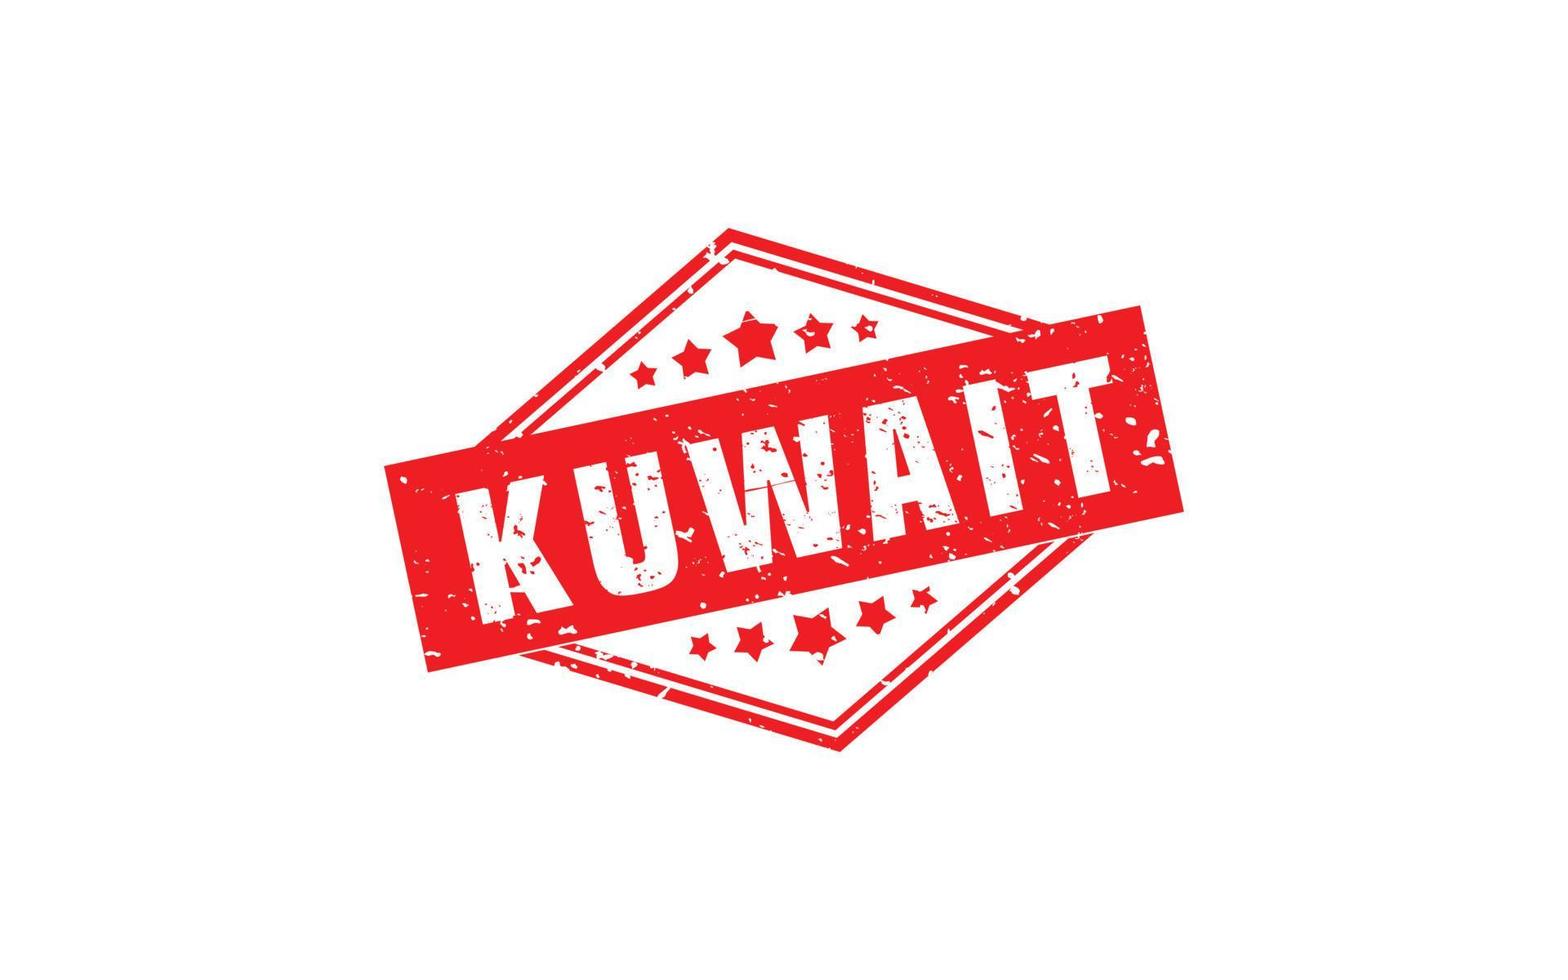 Kuwait-Stempelgummi mit Grunge-Stil auf weißem Hintergrund vektor